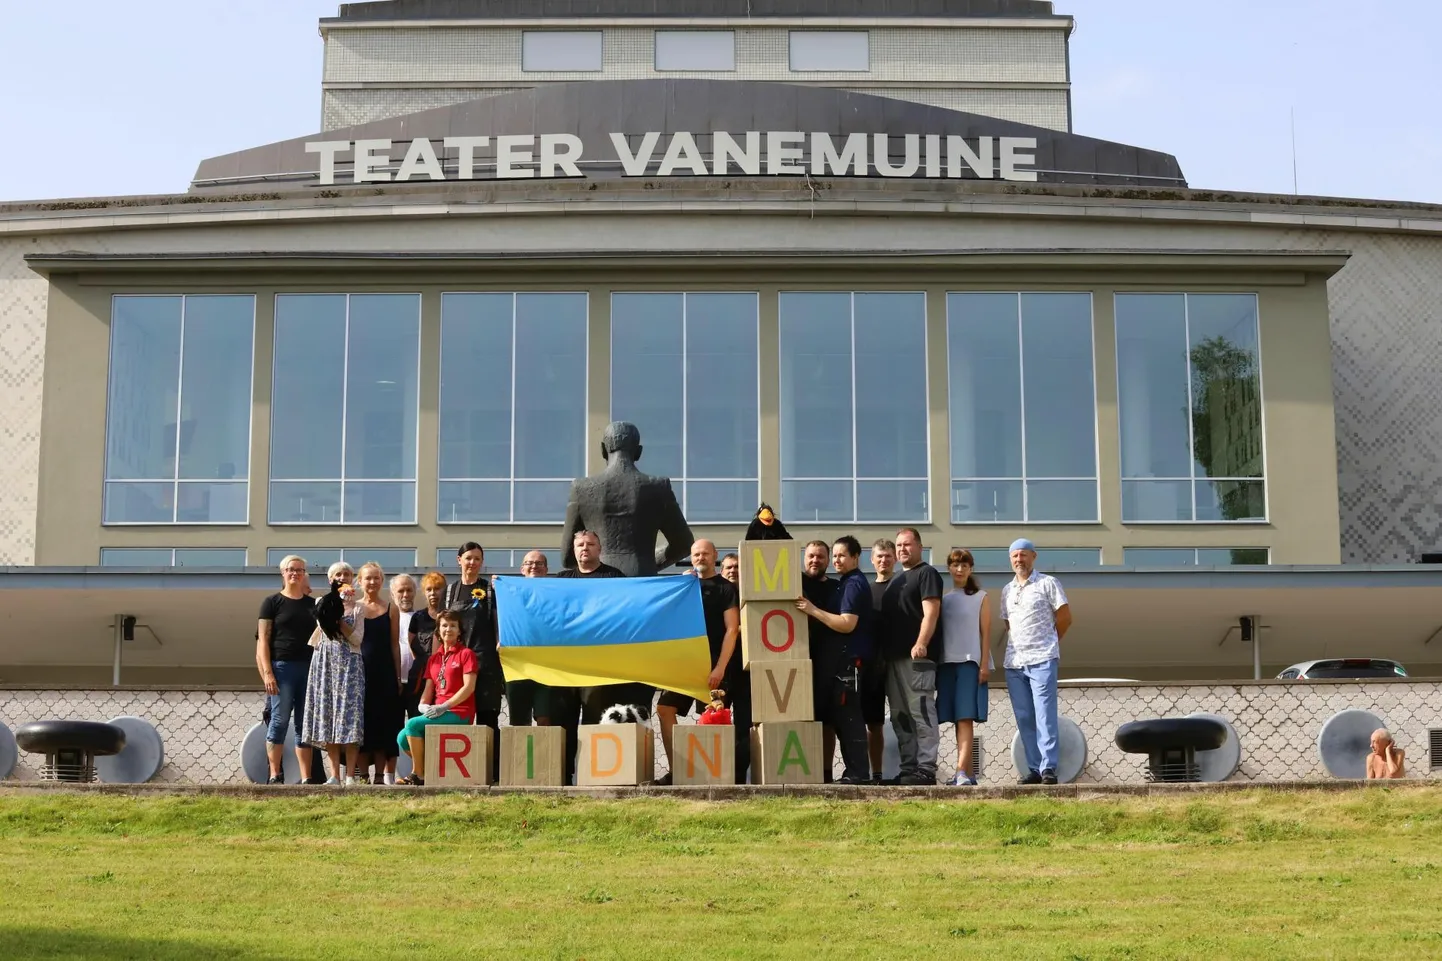 Kõigi teiste hulgas tervitas Ukrainat iseseisvuspäeva puhul Vanemuise teater.